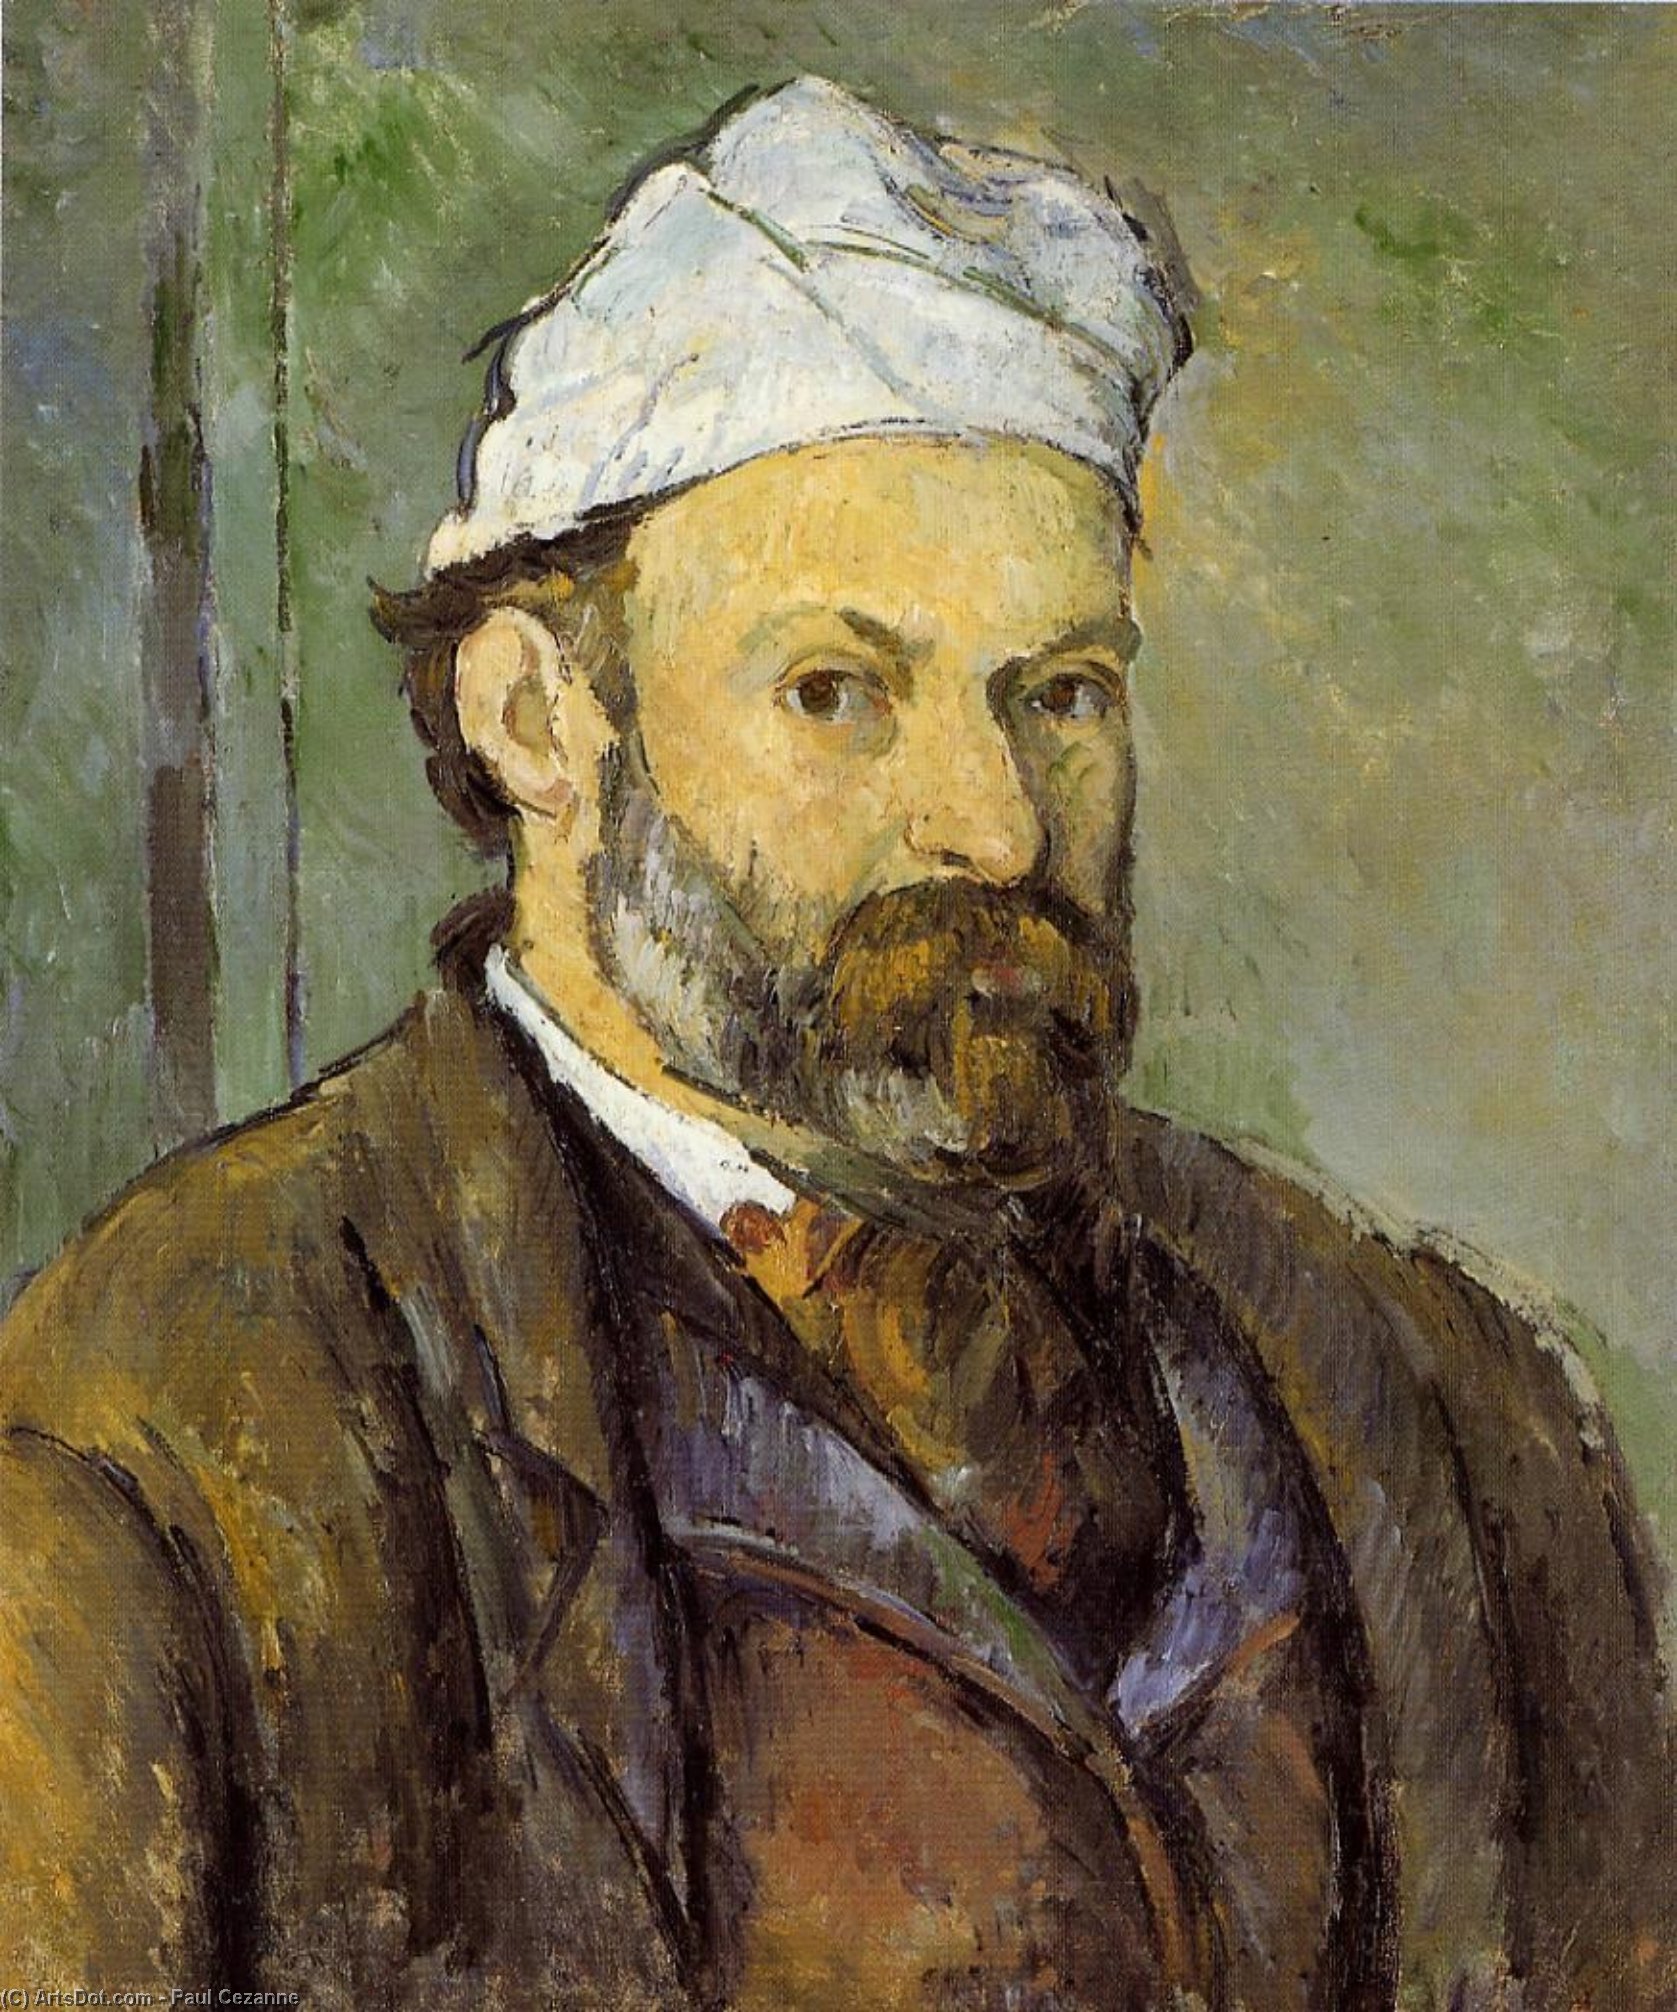 Comprar Reproducciones De Arte Del Museo Auto Retrato en una capa blanca, 1882 de Paul Cezanne (1839-1906, France) | ArtsDot.com